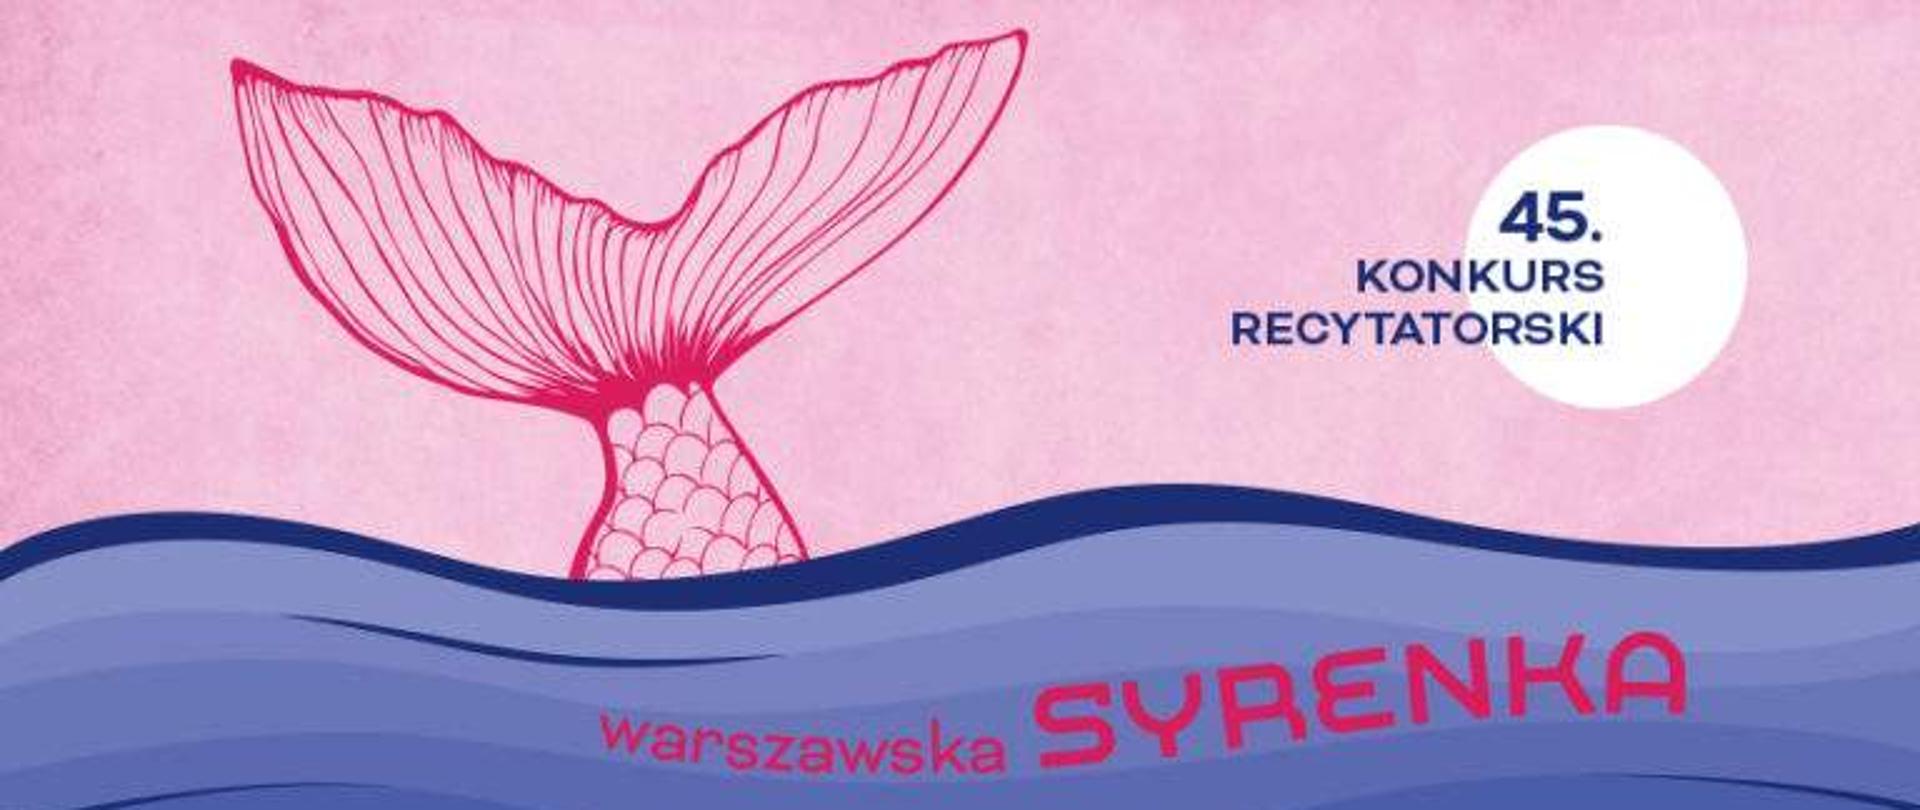 Rybi ogon wystający z wody. 45 konkurs recytatorski Warszawska Syrenka